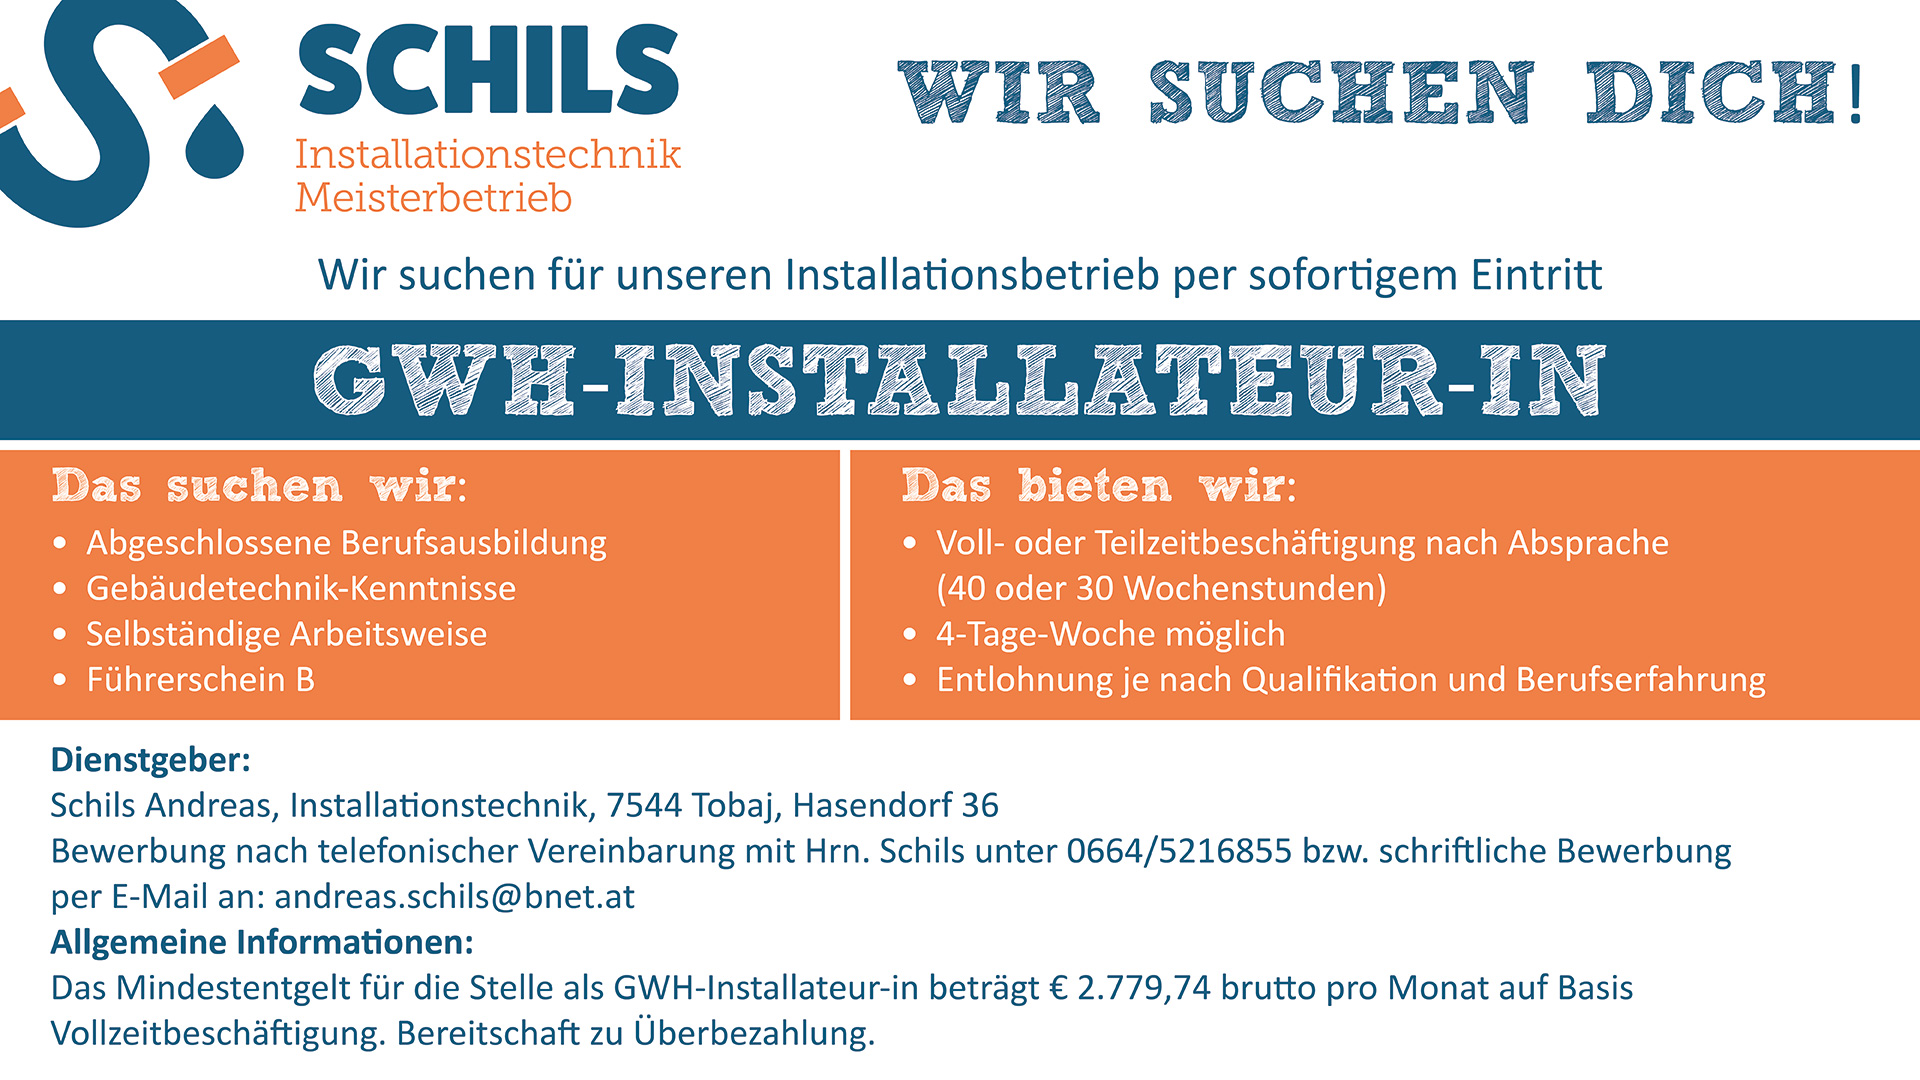 Schils Installation | Jobangabot als GWH-Installateur-in